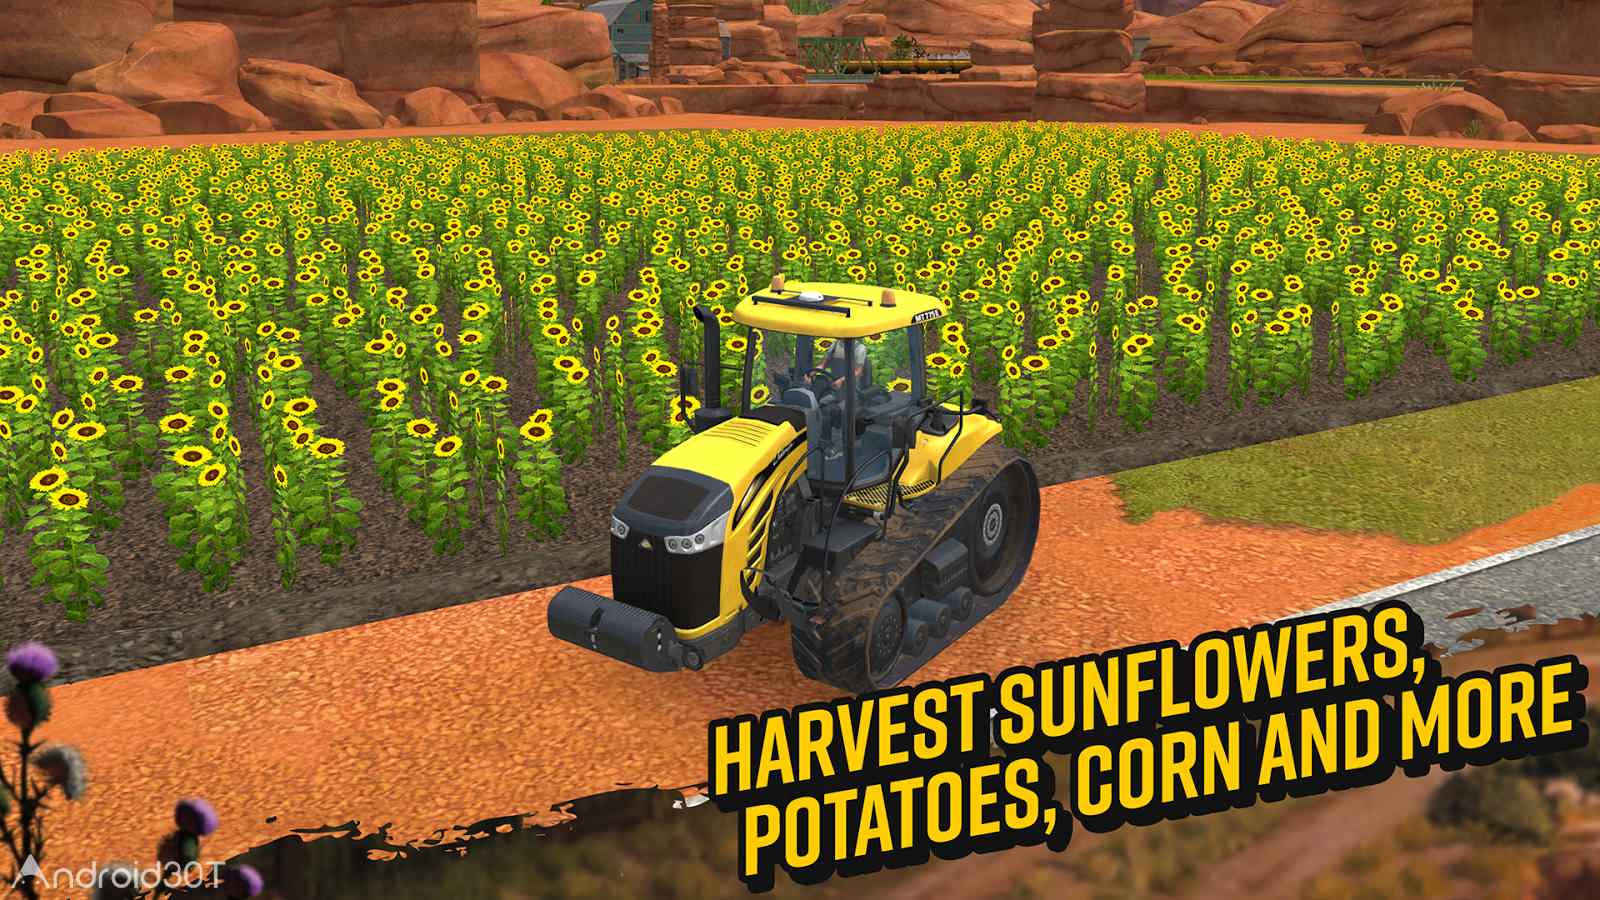 دانلود Farming Simulator 18 v1.4.0.6 – بازی شبیه سازی کشاورزی 2018 اندروید